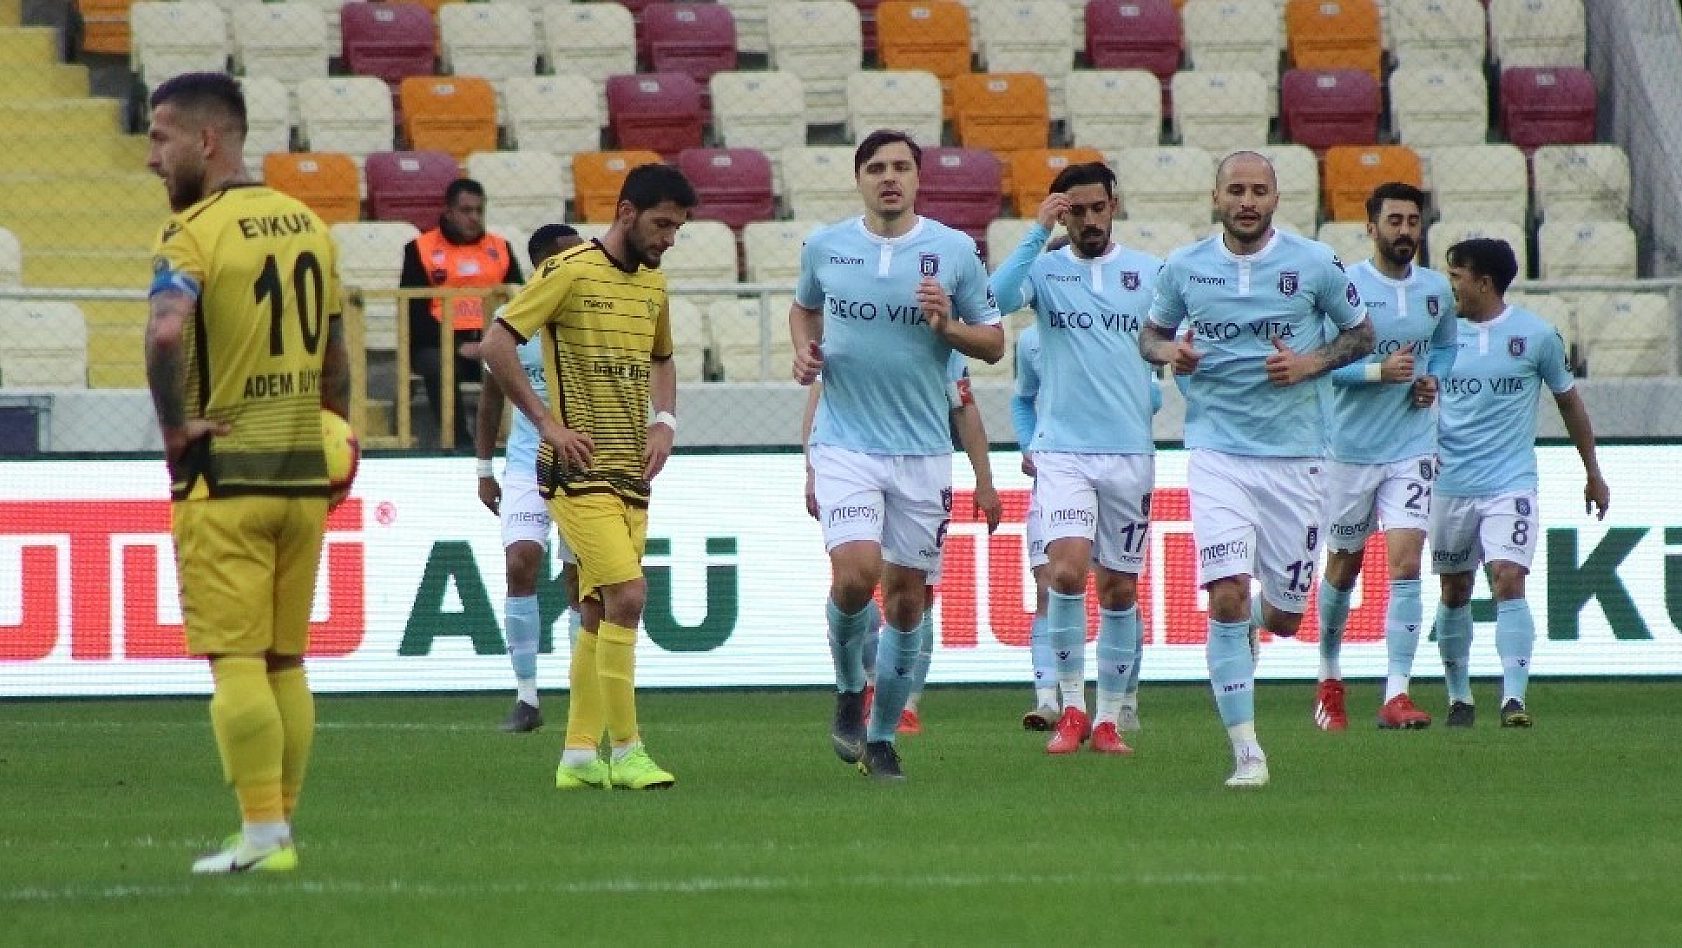 Spor Toto Süper Lig: Evkur Yeni Malatyaspor: 0 - Medipol Başakşehir: 2 (Maç sonucu) 